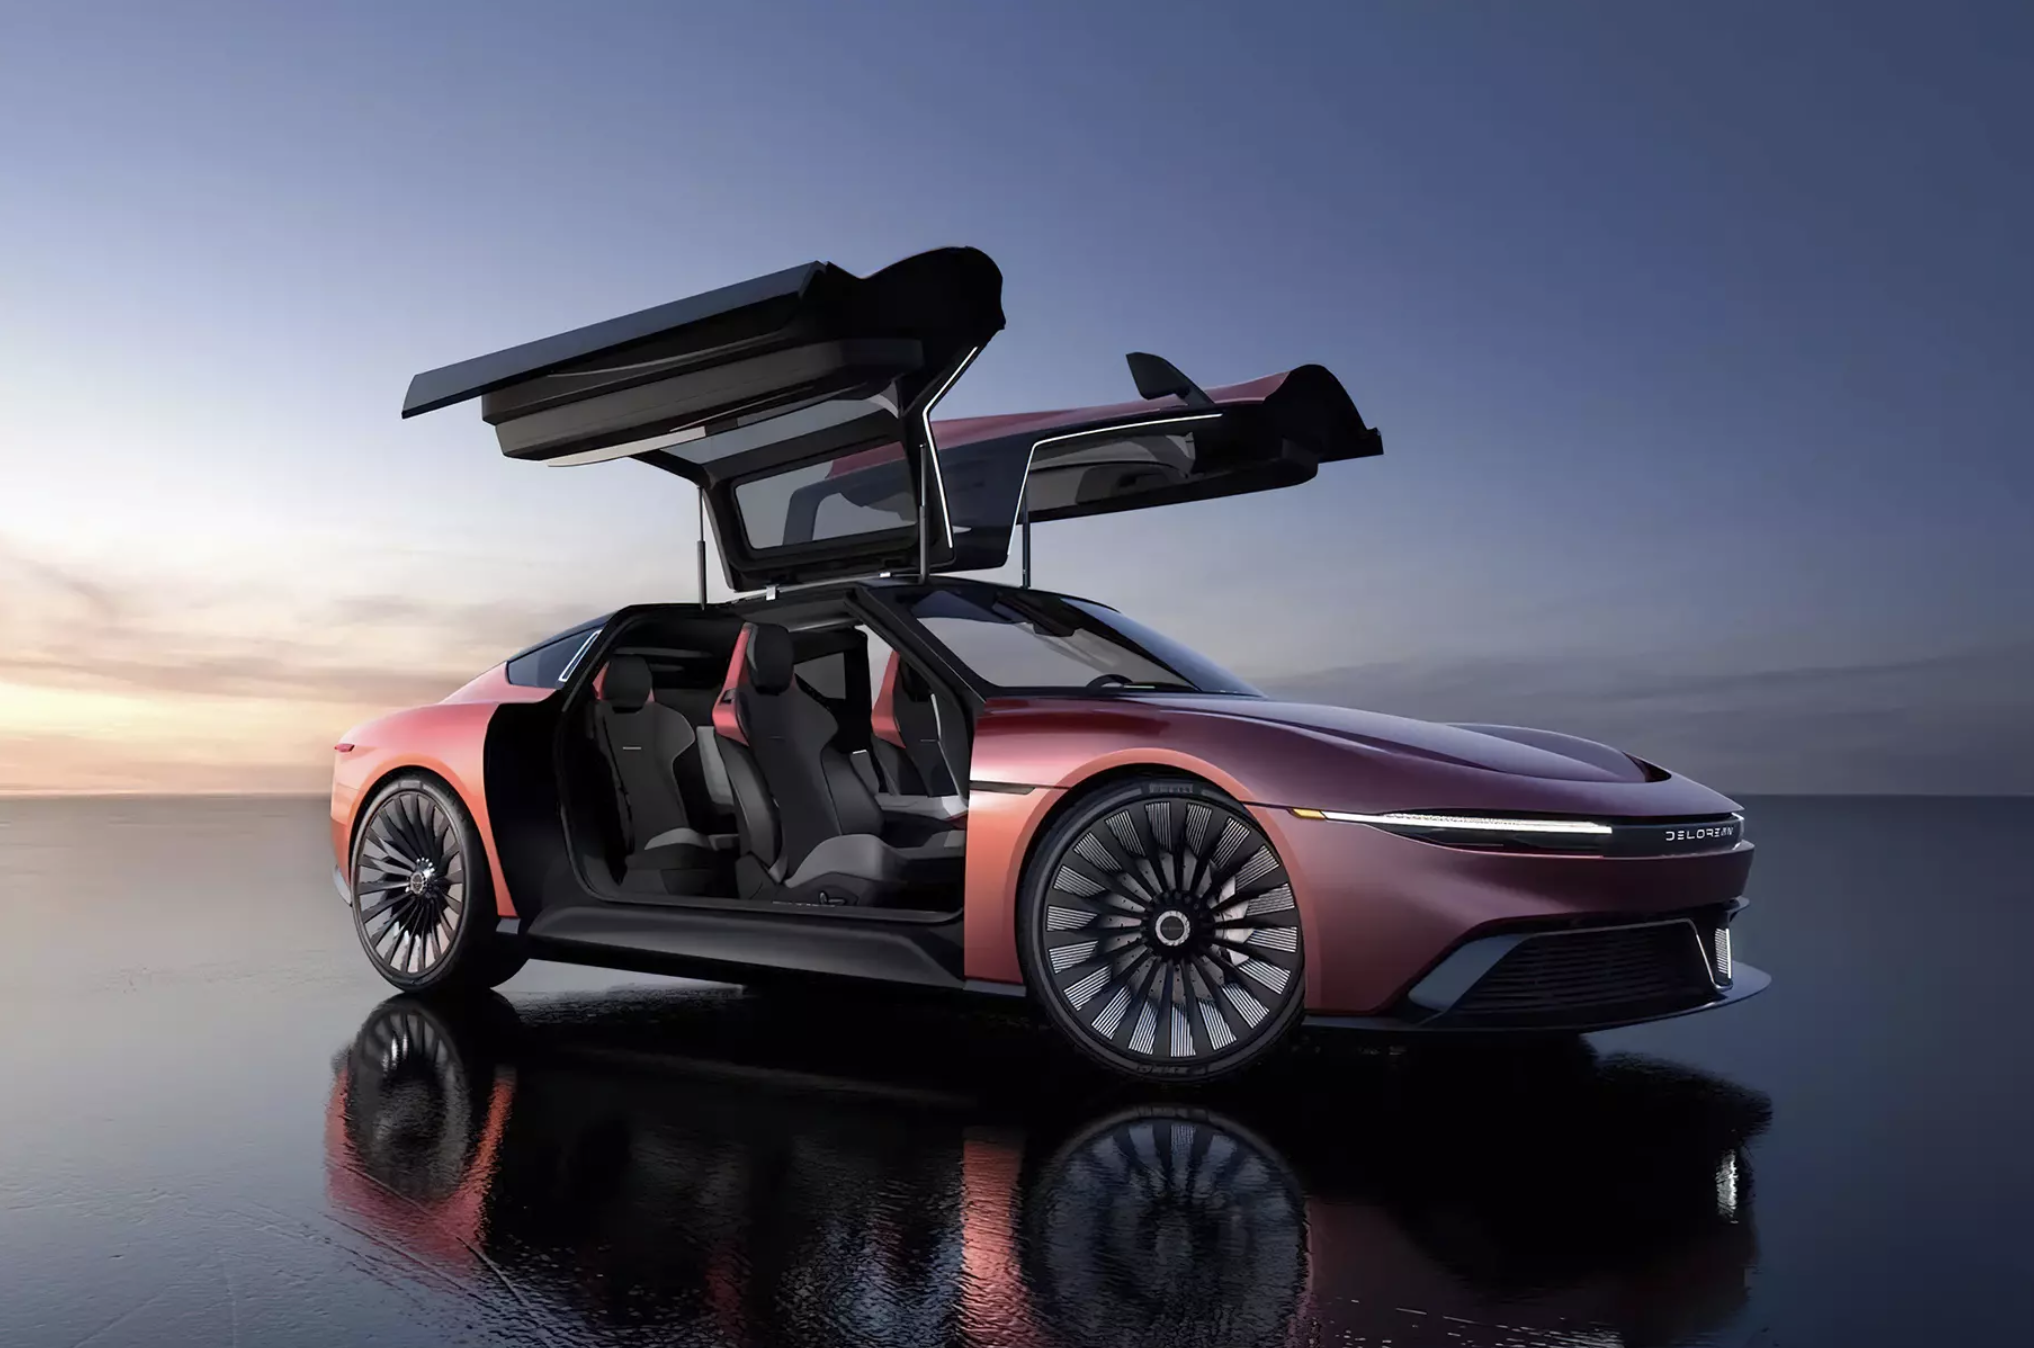 La DeLorean di "Ritorno al futuro" ha ricevuto una nuova versione: ora è un'auto elettrica con un'autonomia fino a 482 km e un'accelerazione a "centinaia" in 3,4 secondi